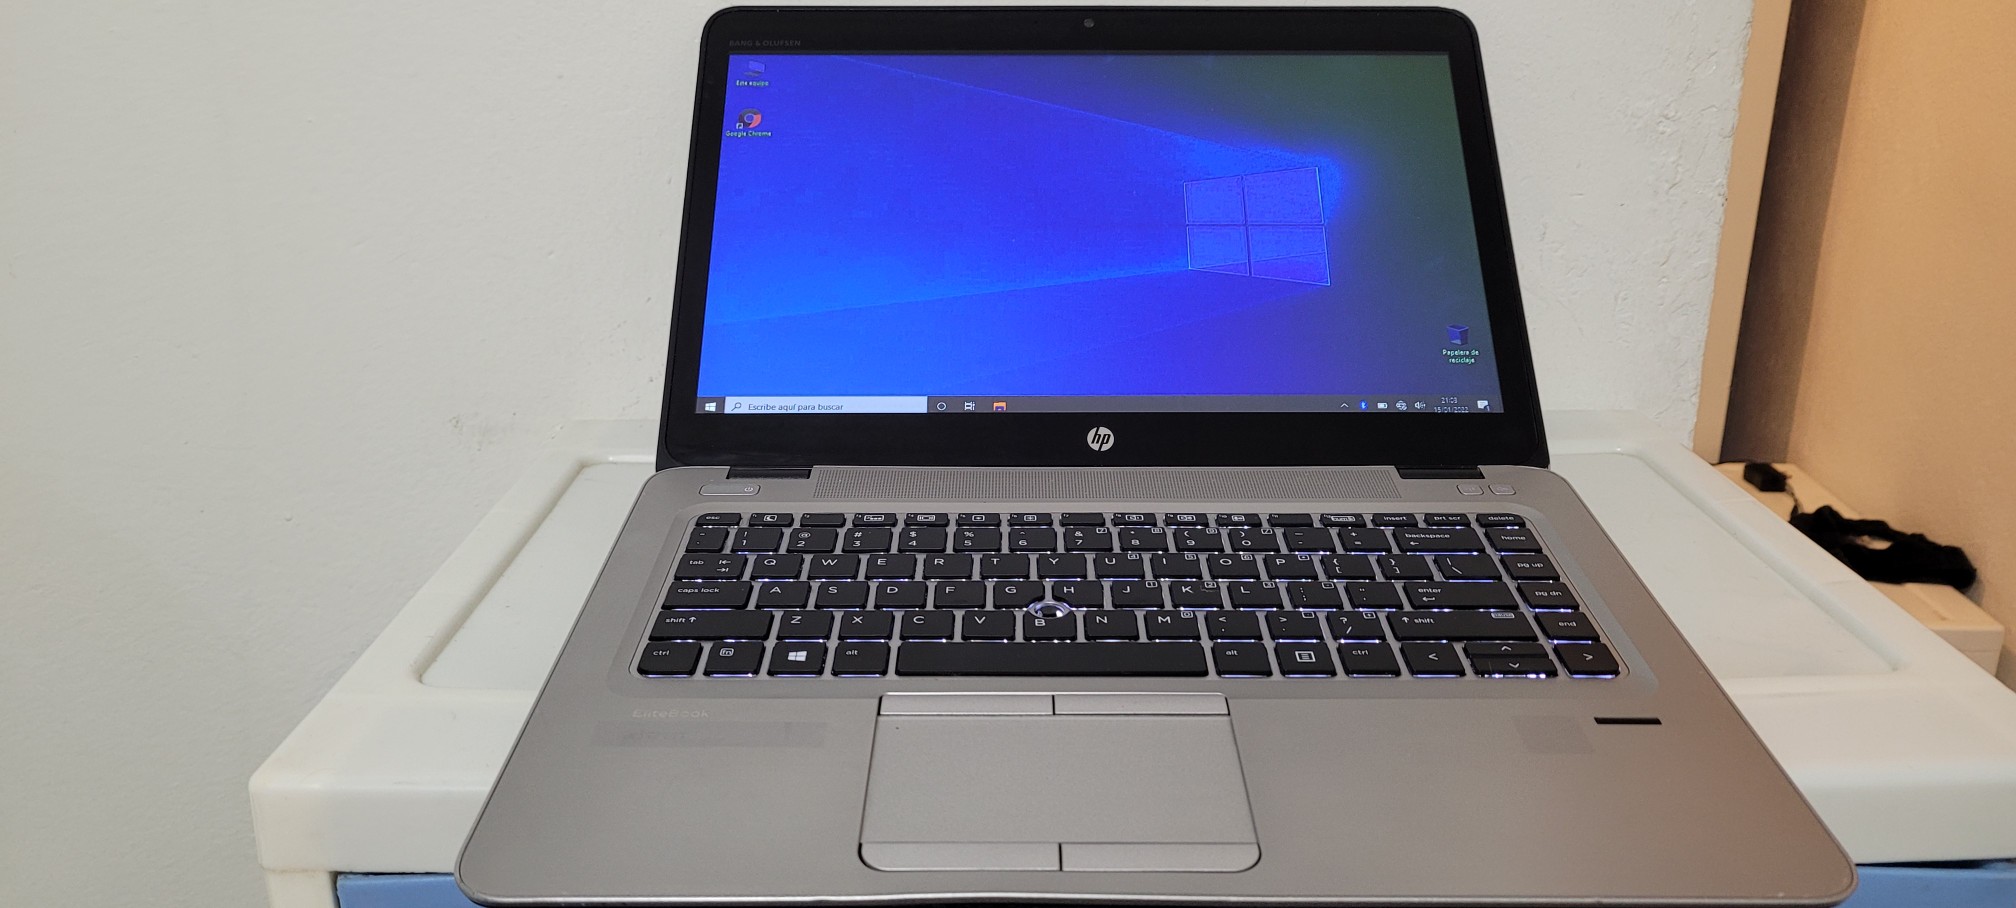 computadoras y laptops - Laptop hp 14 Pulg Core i5 6ta Ram 8gb ddr4 Disco 128gb y 320gb hdmi 0